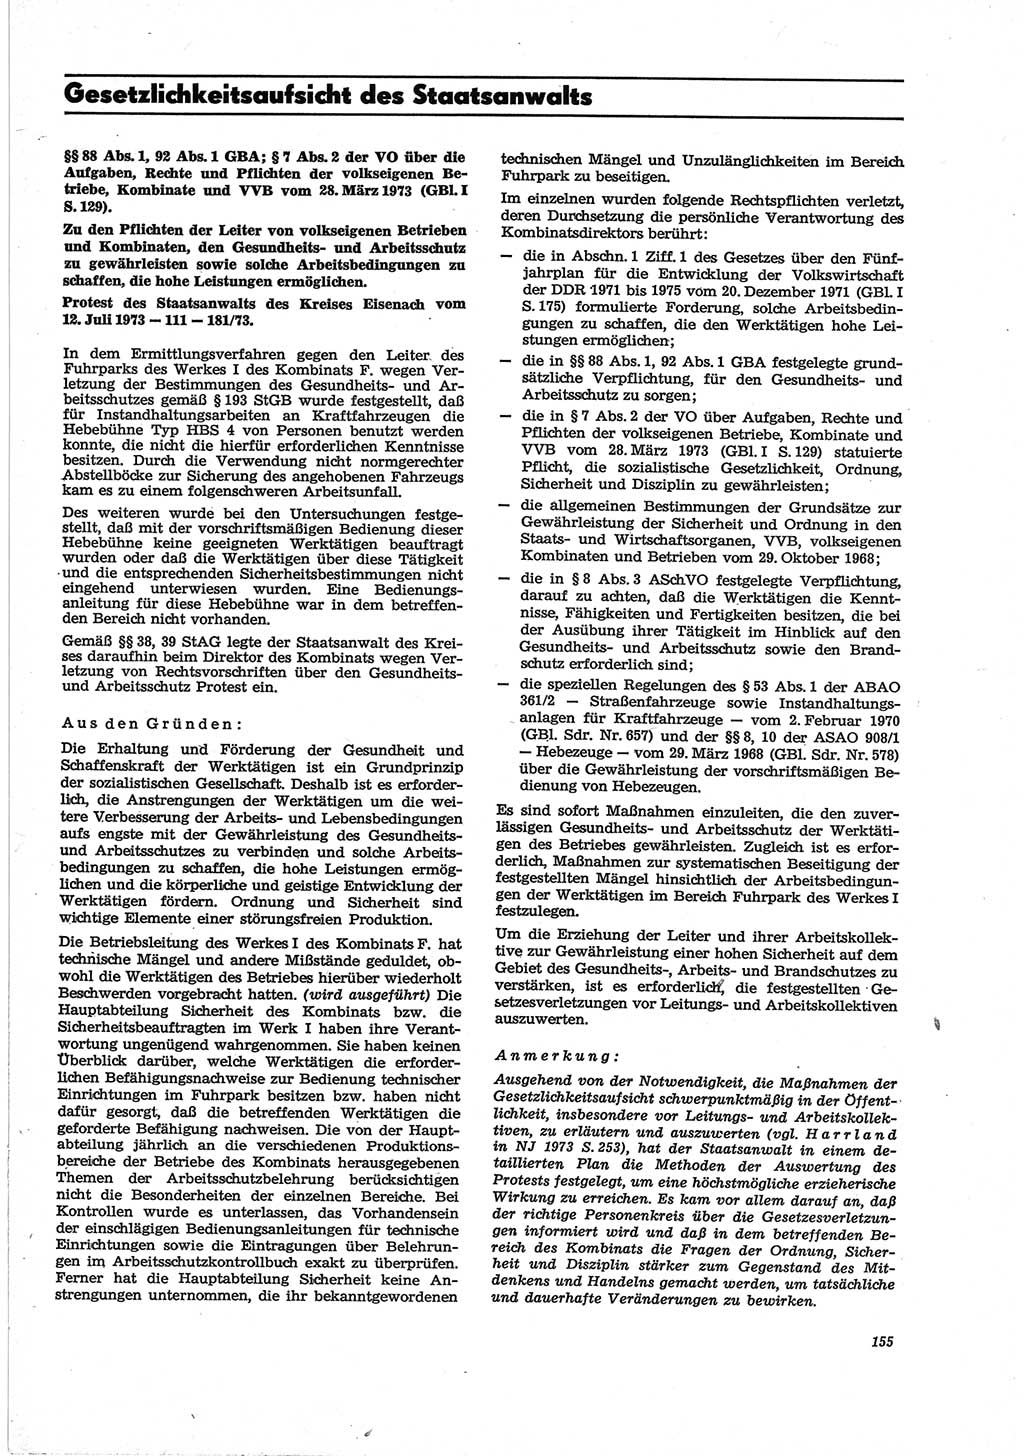 Neue Justiz (NJ), Zeitschrift für Recht und Rechtswissenschaft [Deutsche Demokratische Republik (DDR)], 28. Jahrgang 1974, Seite 155 (NJ DDR 1974, S. 155)